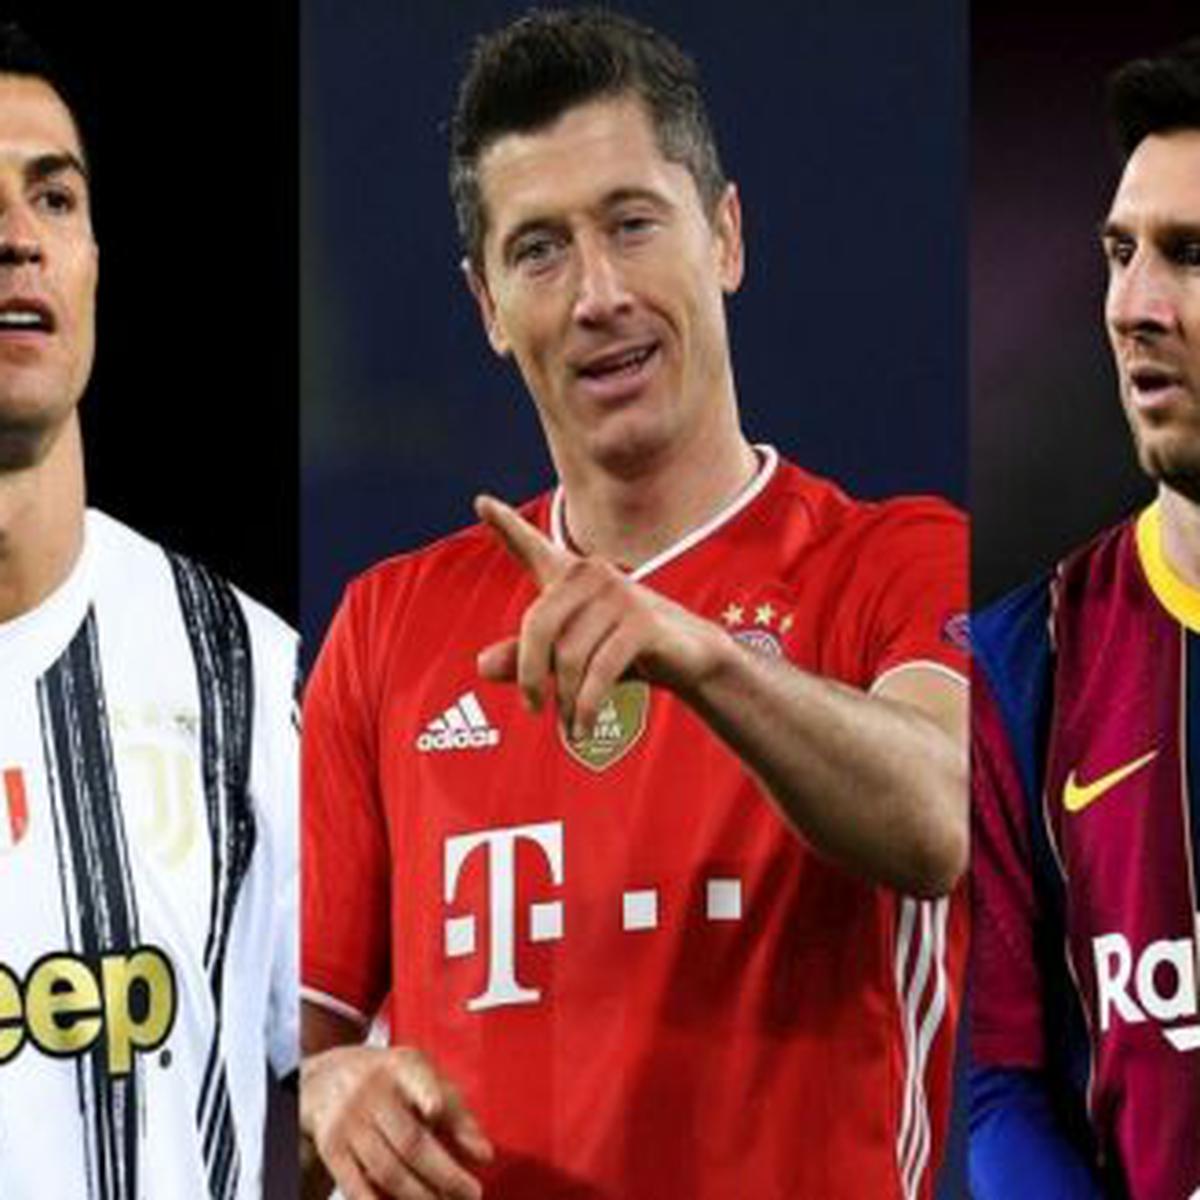 Bota de Oro 2021: de goleadores y clasificación actualizada de Robert Cristiano Ronaldo y Lionel Messi | FOTOS | | DEPOR